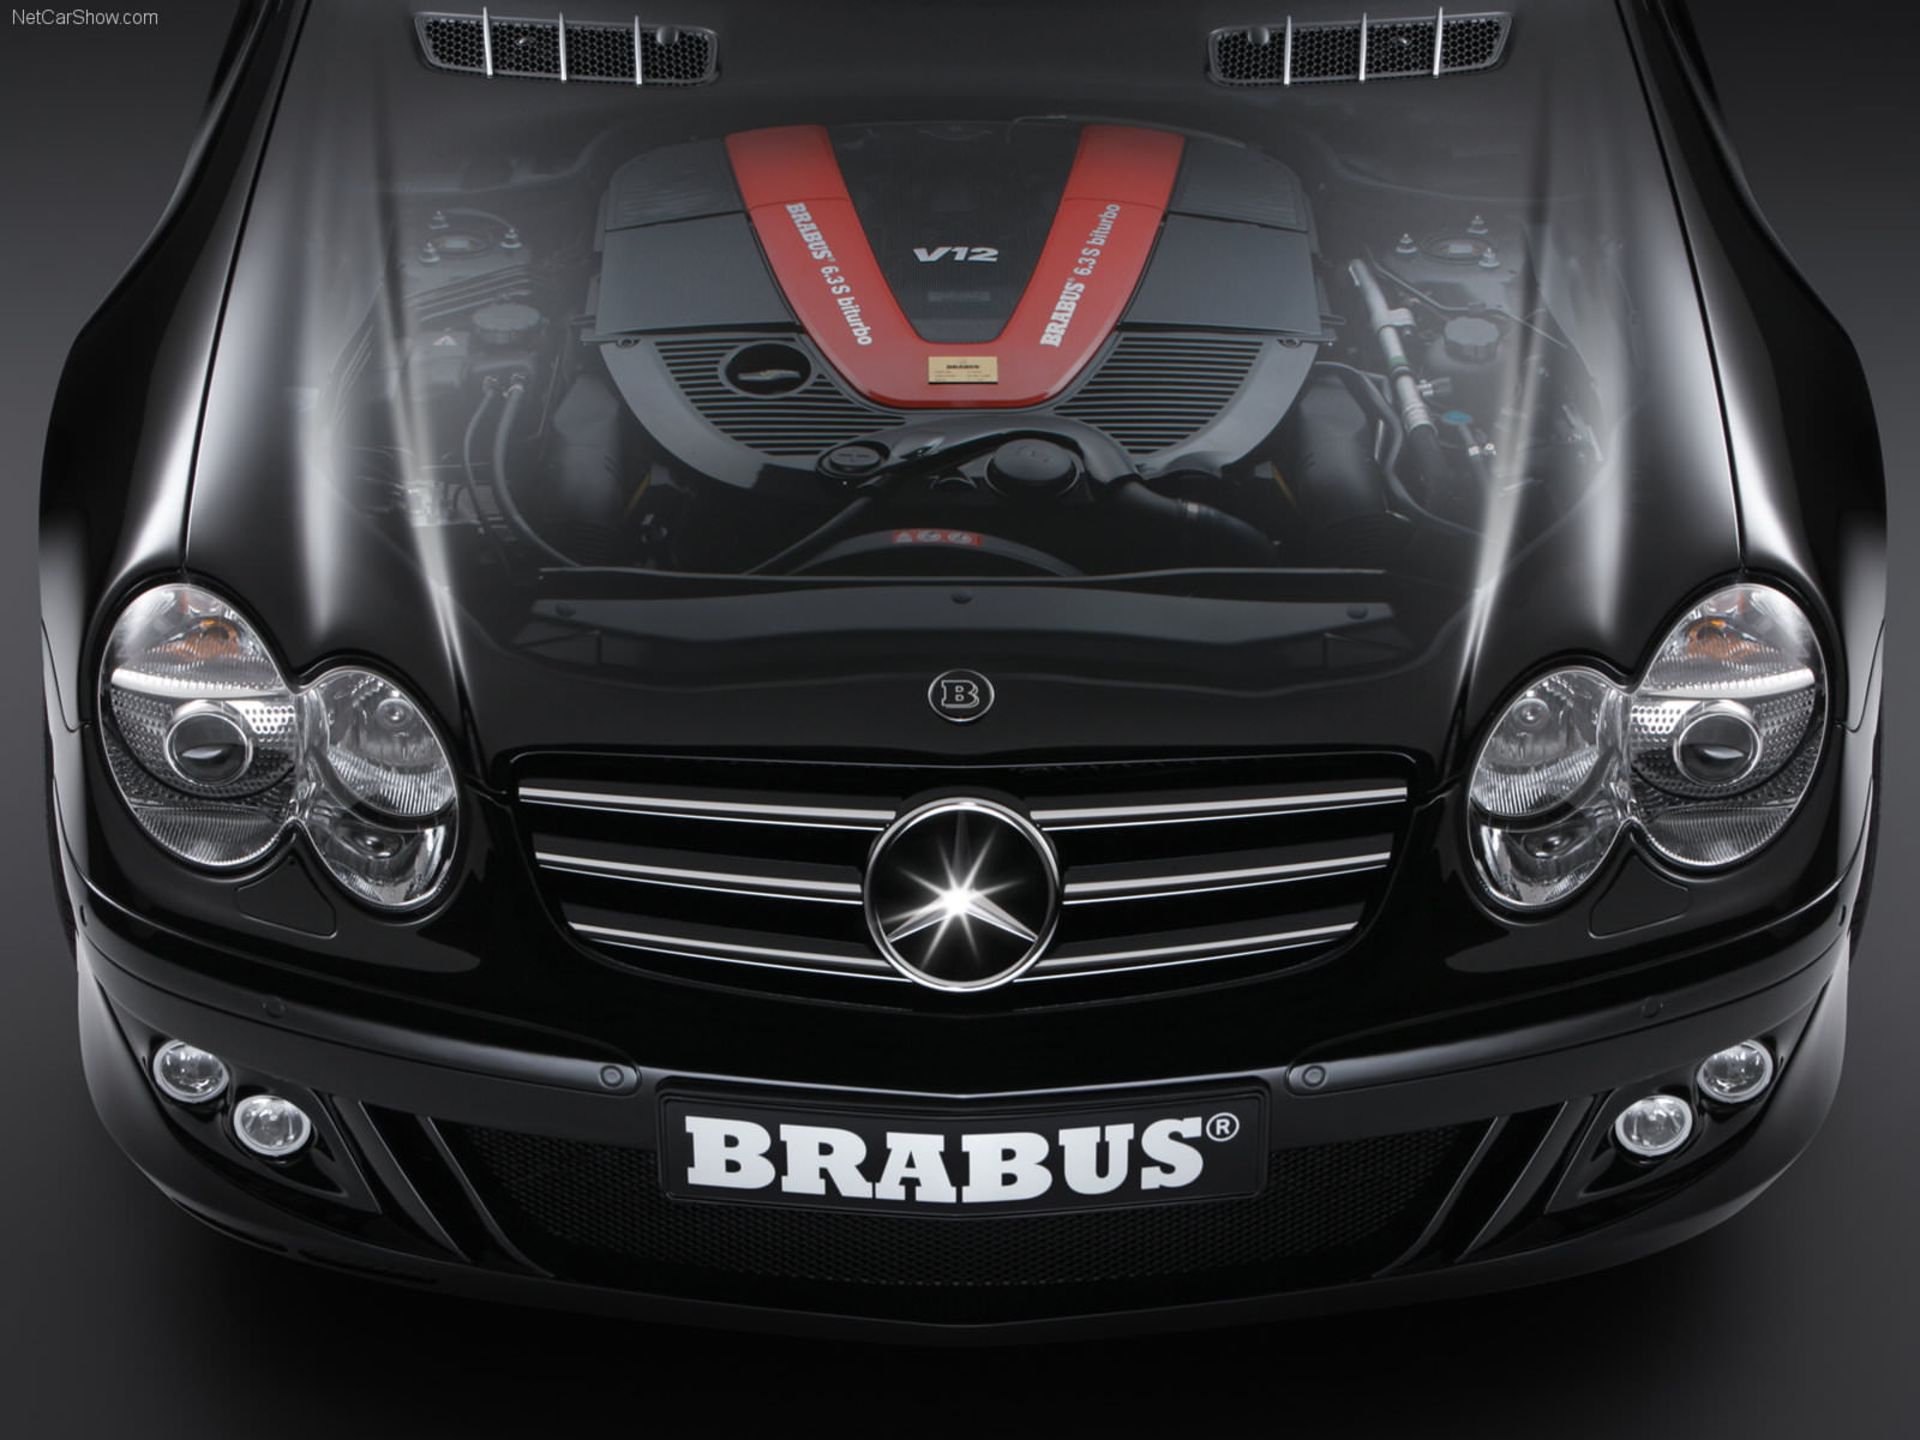 Brabus SV12 S Biturbo Roadster / برابوس